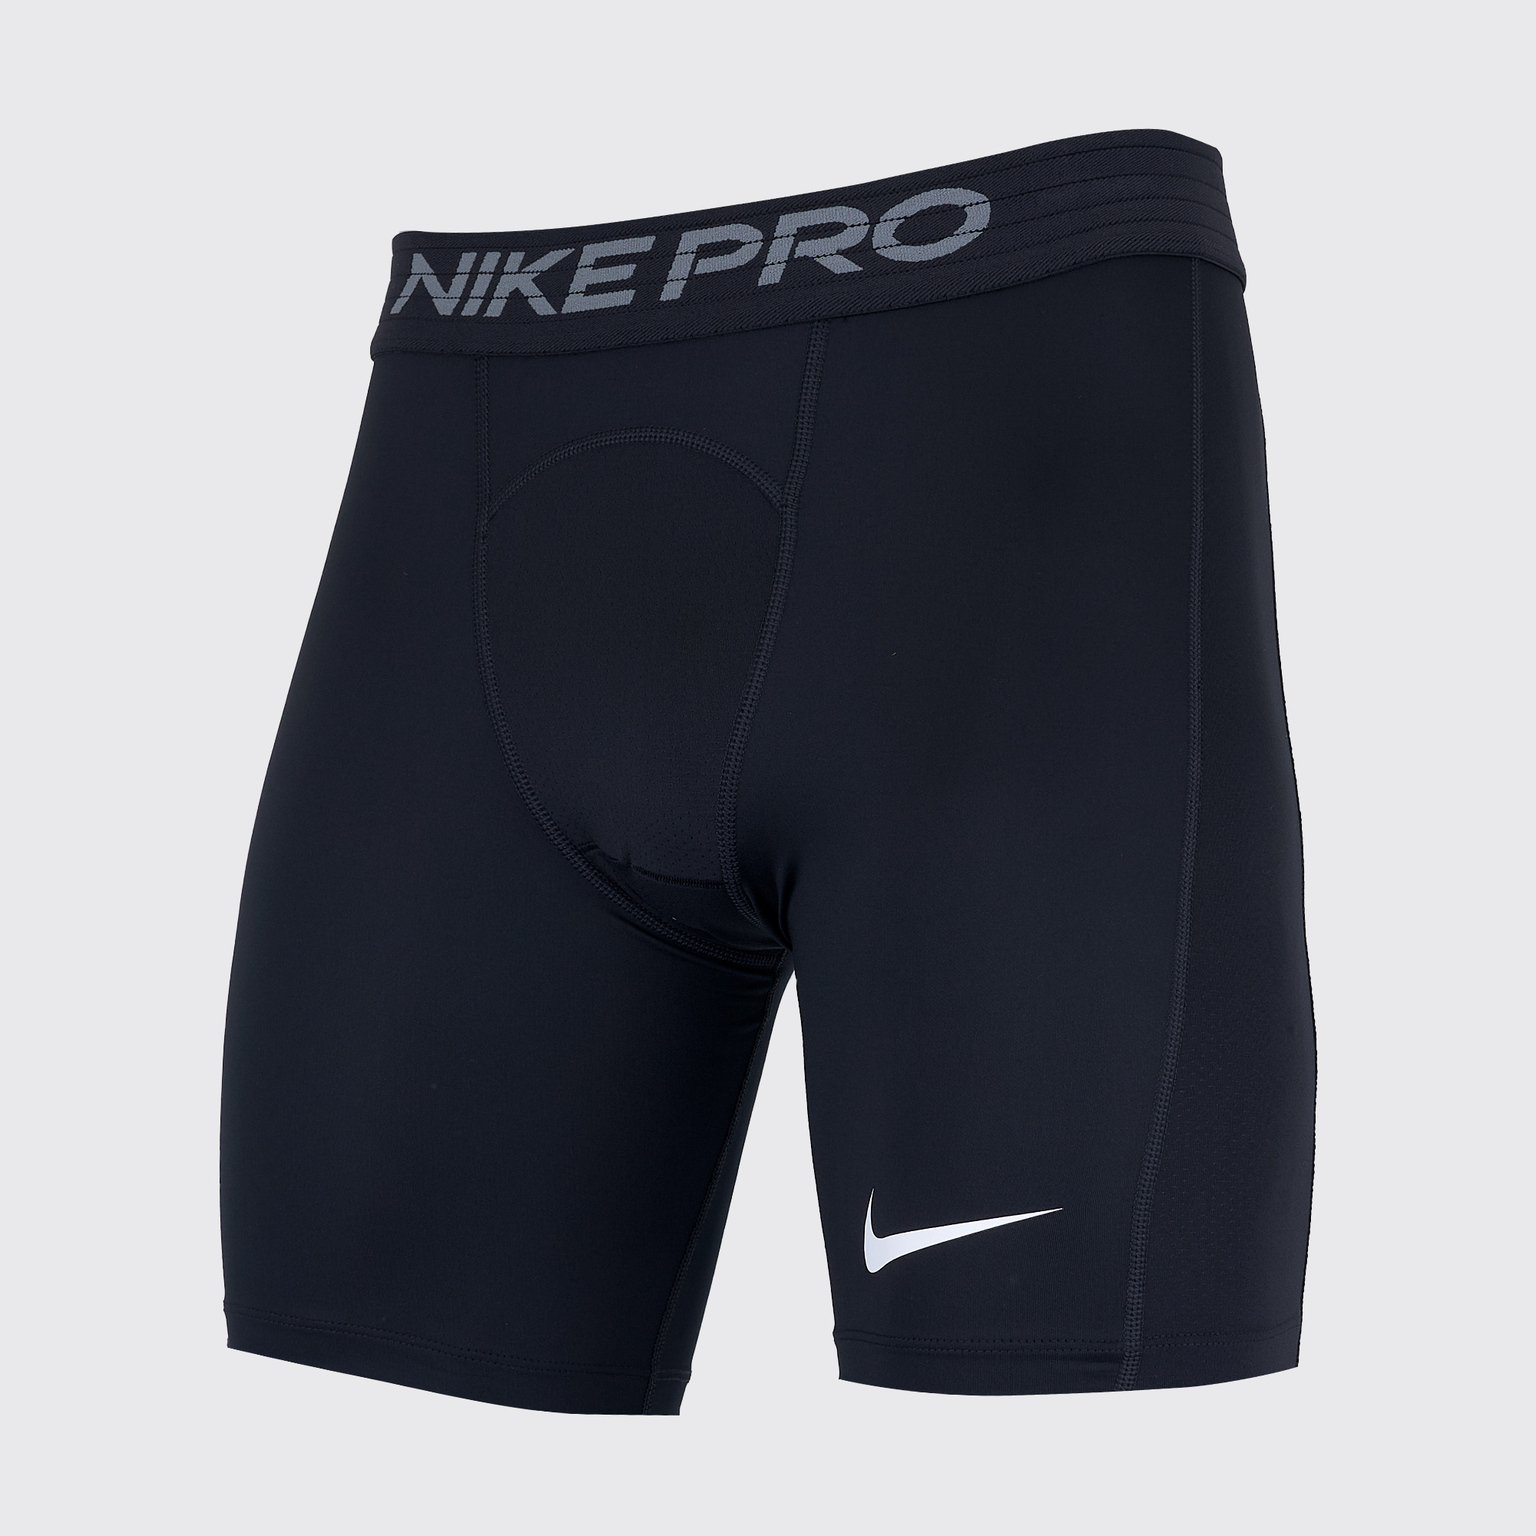 Купить Белье шорты Nike Pro BV5635-010 - цены, фото, отзывы, доставка